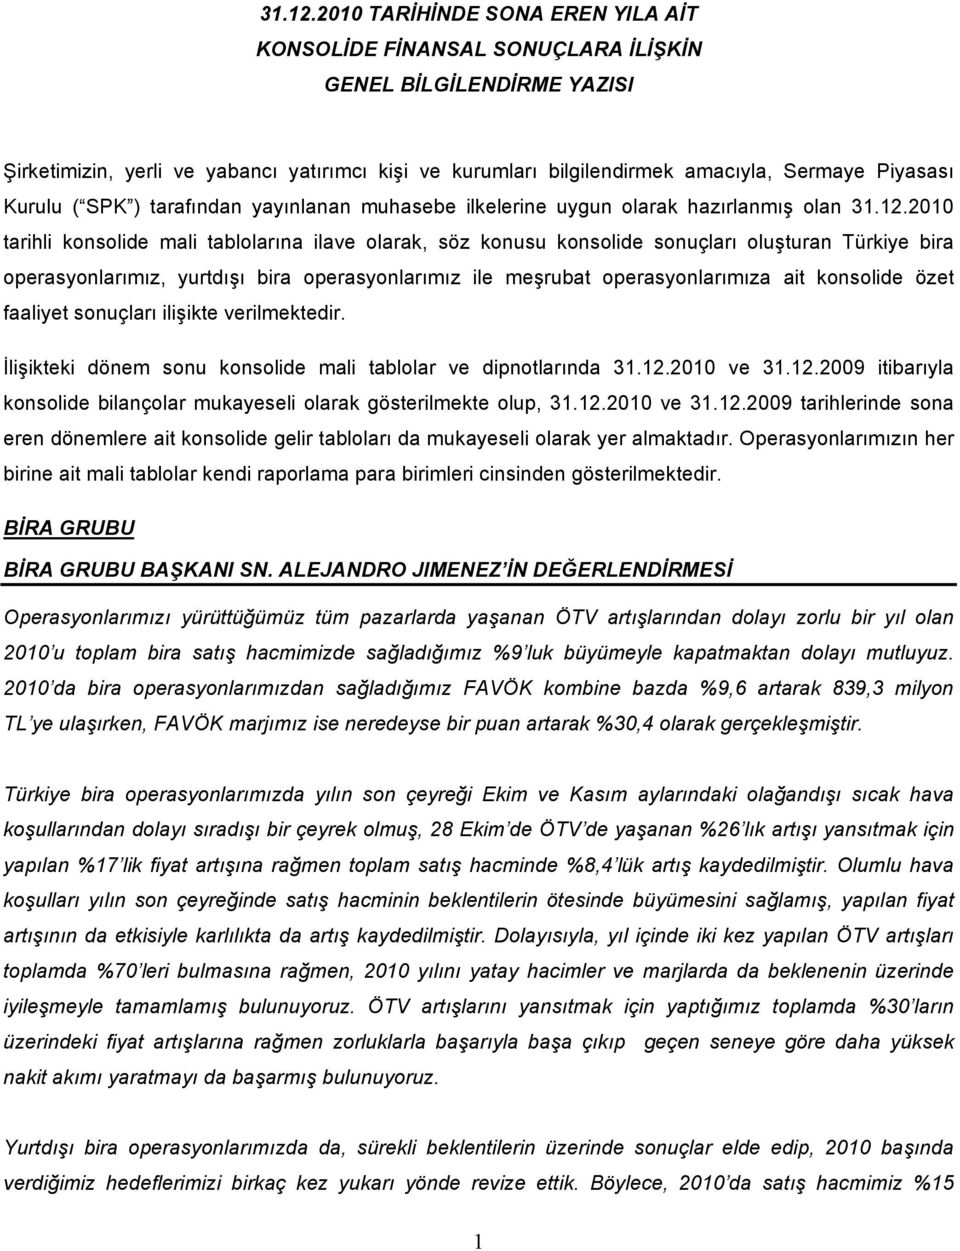 Kurulu ( SPK ) tarafından yayınlanan muhasebe ilkelerine uygun olarak hazırlanmış olan 2010 tarihli konsolide mali tablolarına ilave olarak, söz konusu konsolide sonuçları oluşturan Türkiye bira